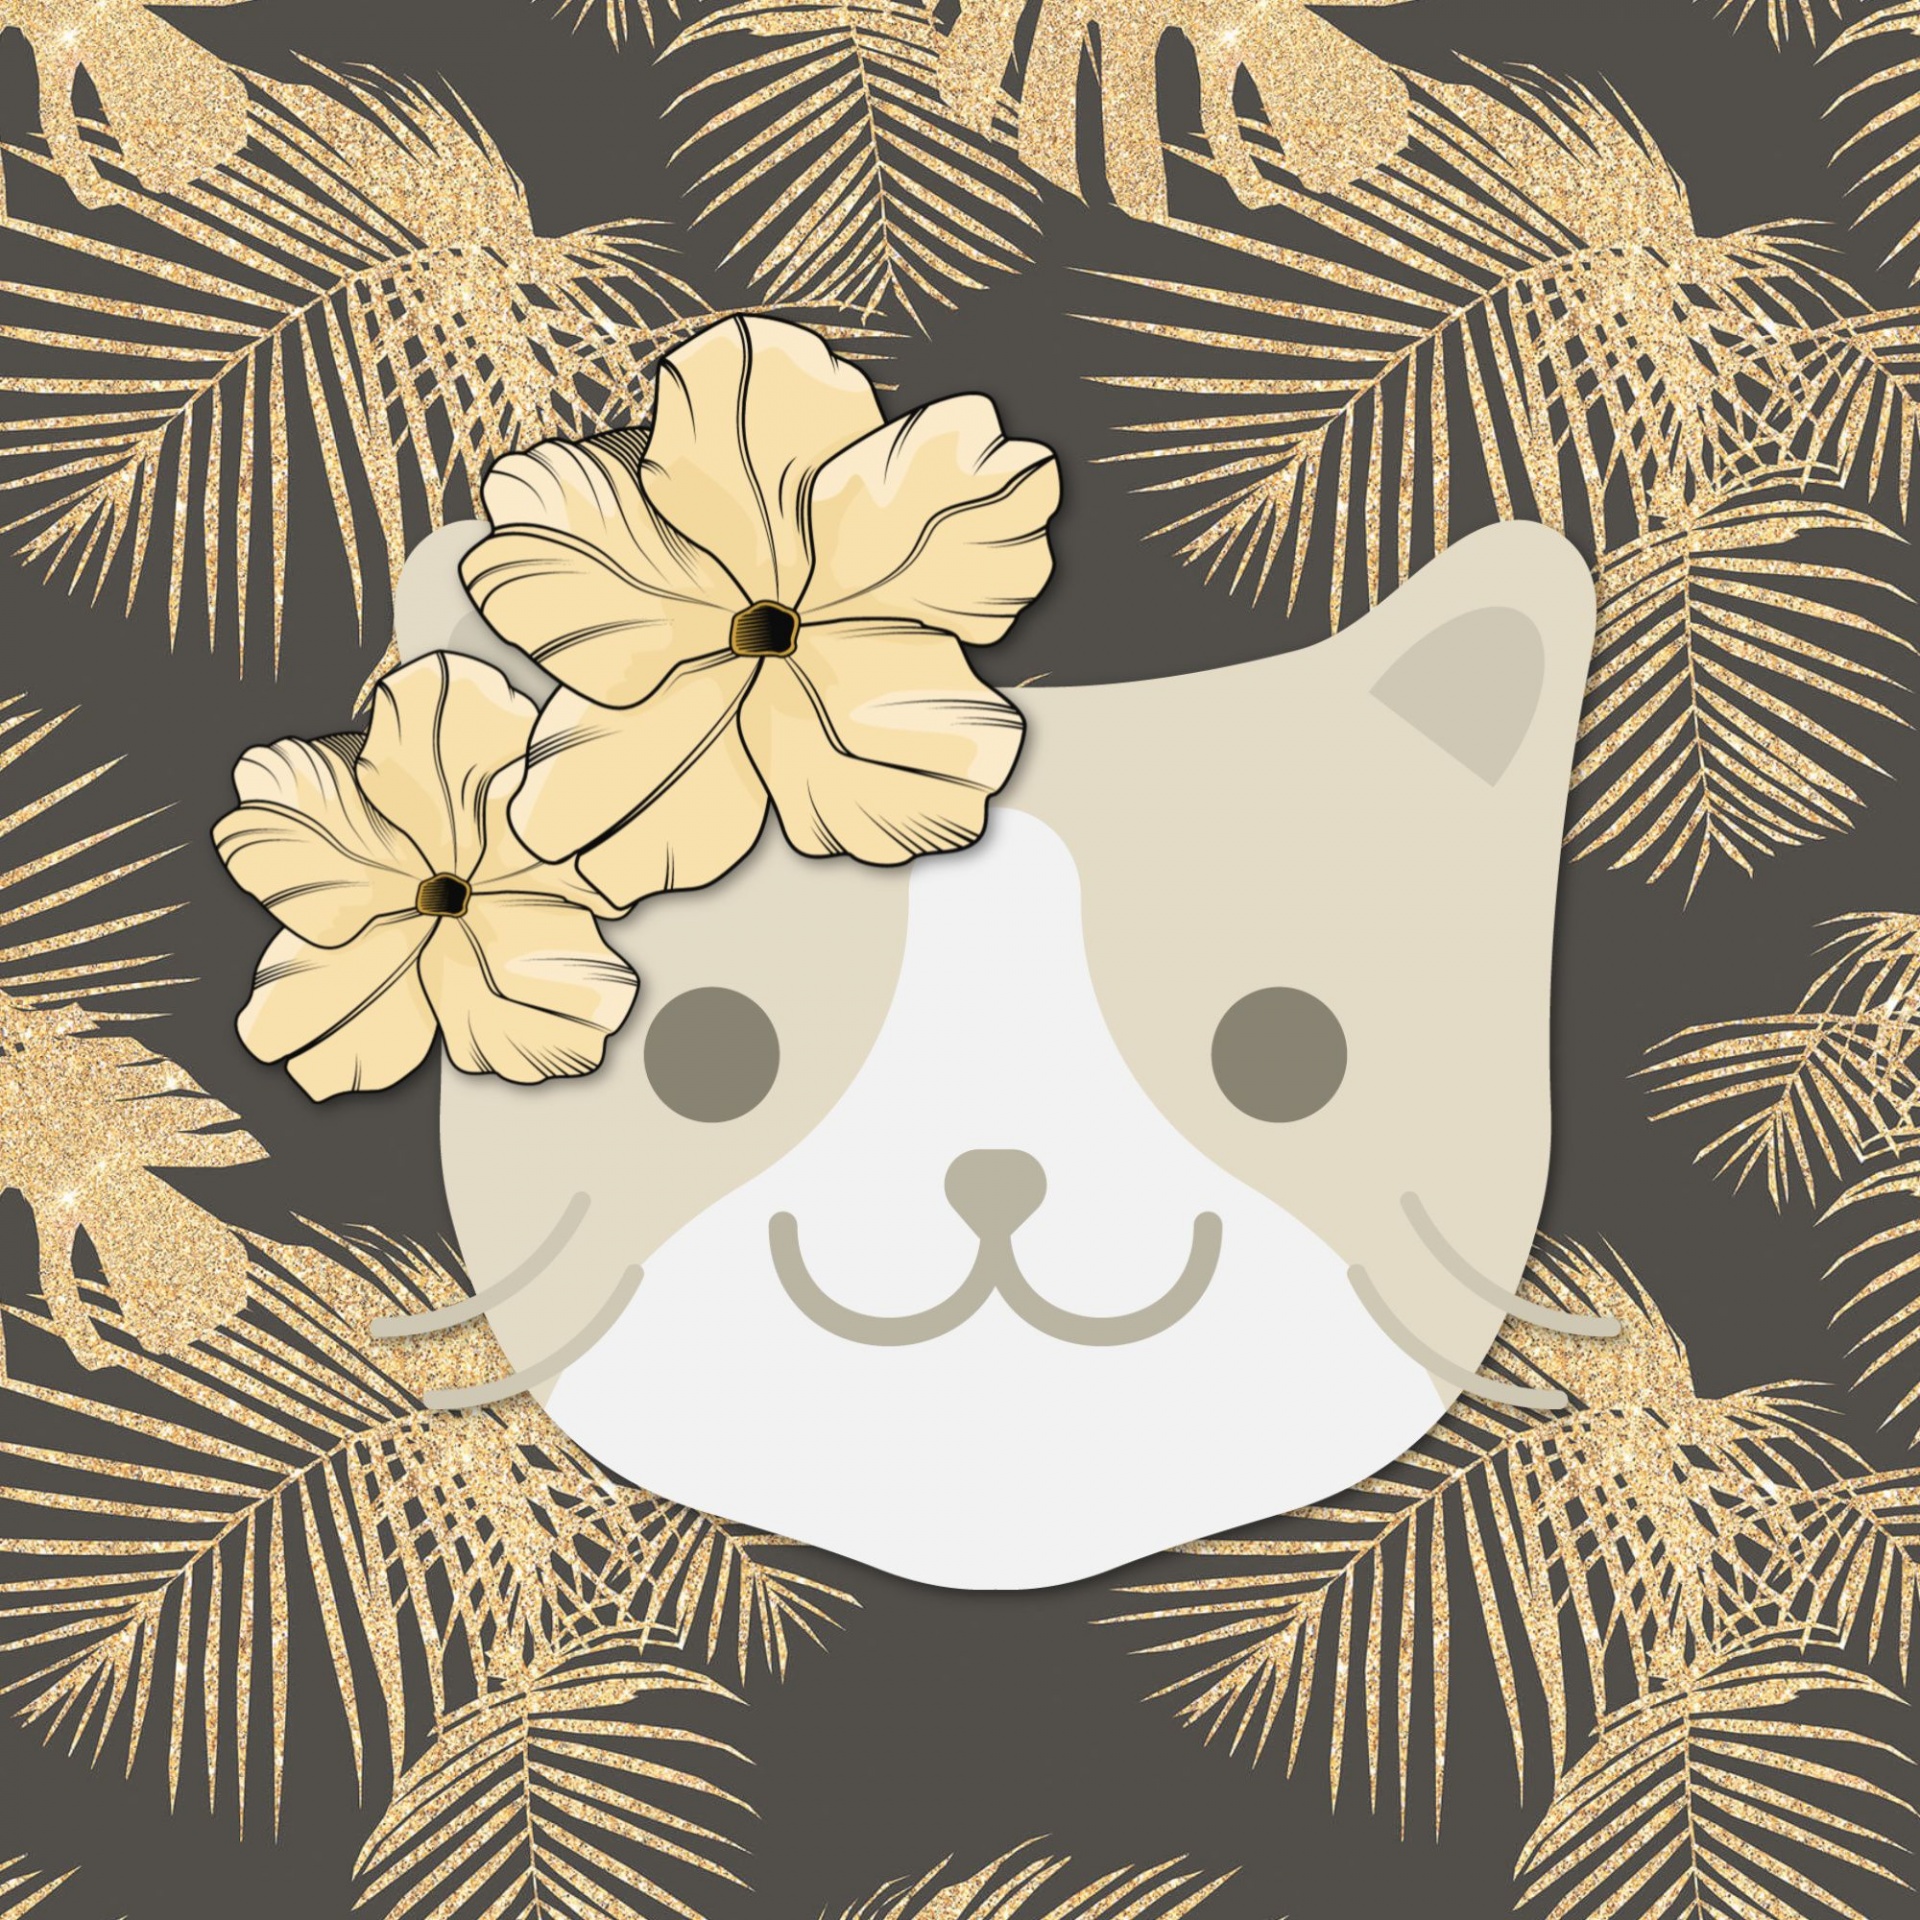 Gato de hawaii